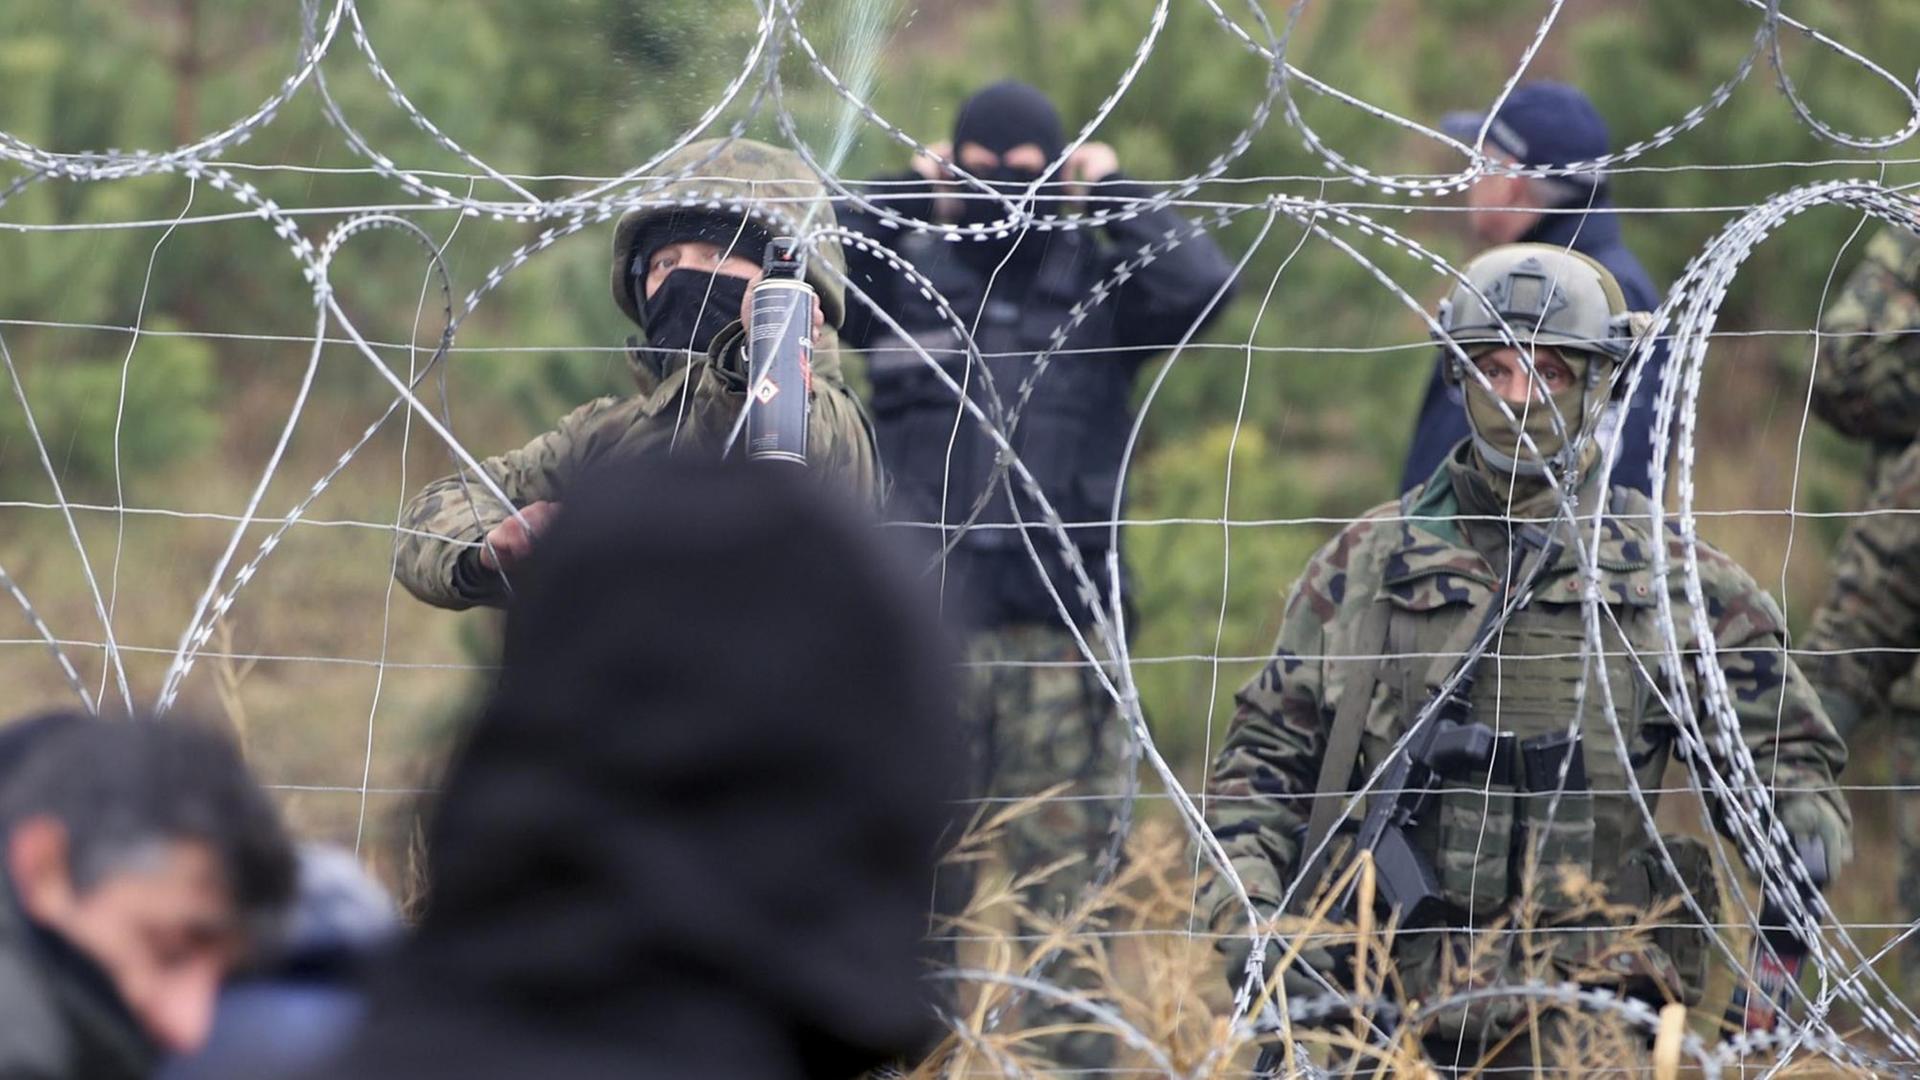 Polnische Grenzpolizisten stehen an einem Stacheldrahtzaun, hinter dem Migranten stehen.